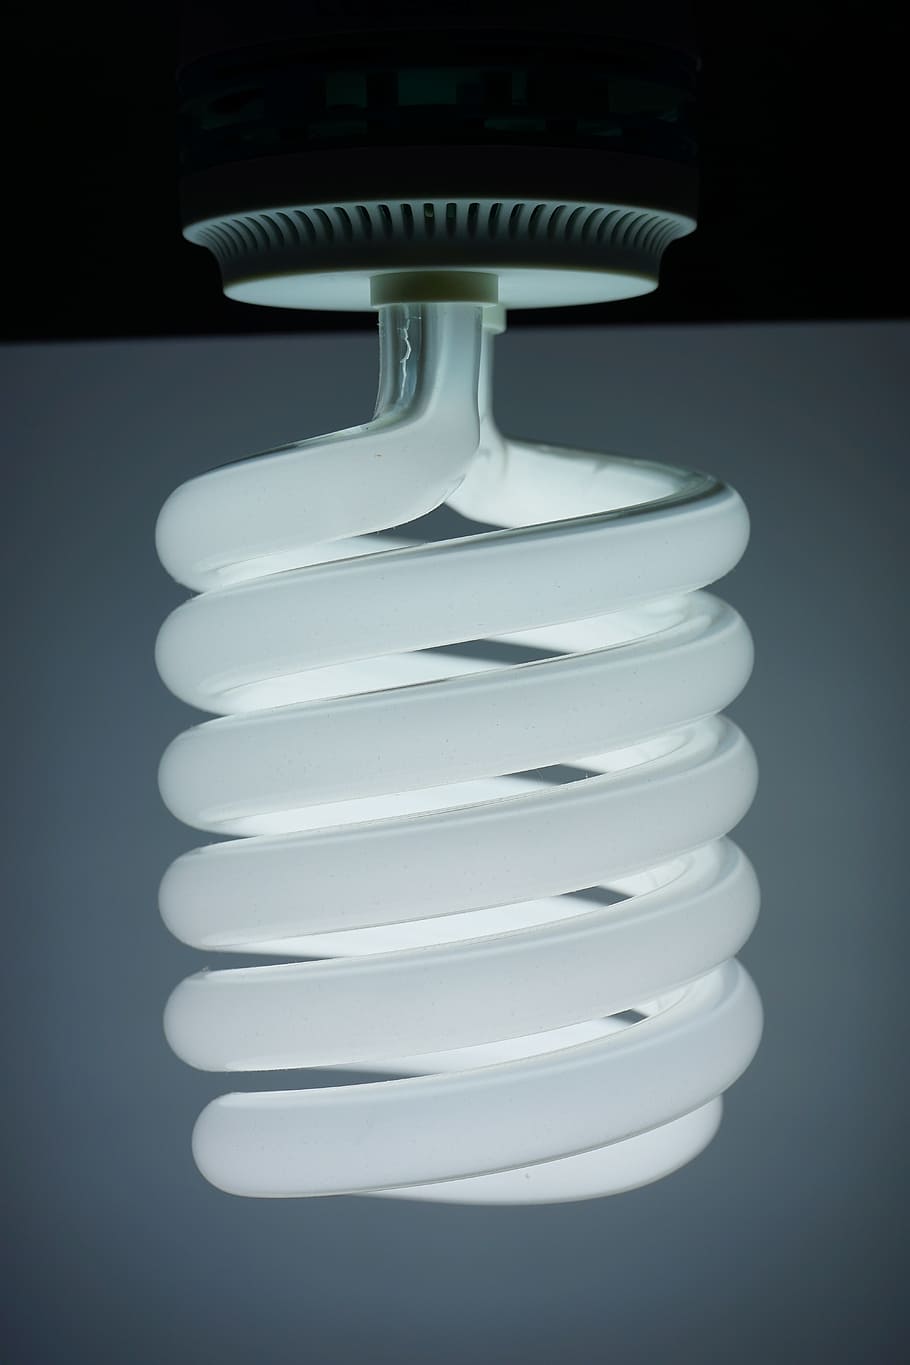 energiesparlampe, ランプ, 電球, 照明, コンパクト蛍光灯, 照明媒体, 省エネ, 蛍光灯, エネルギー, 白色